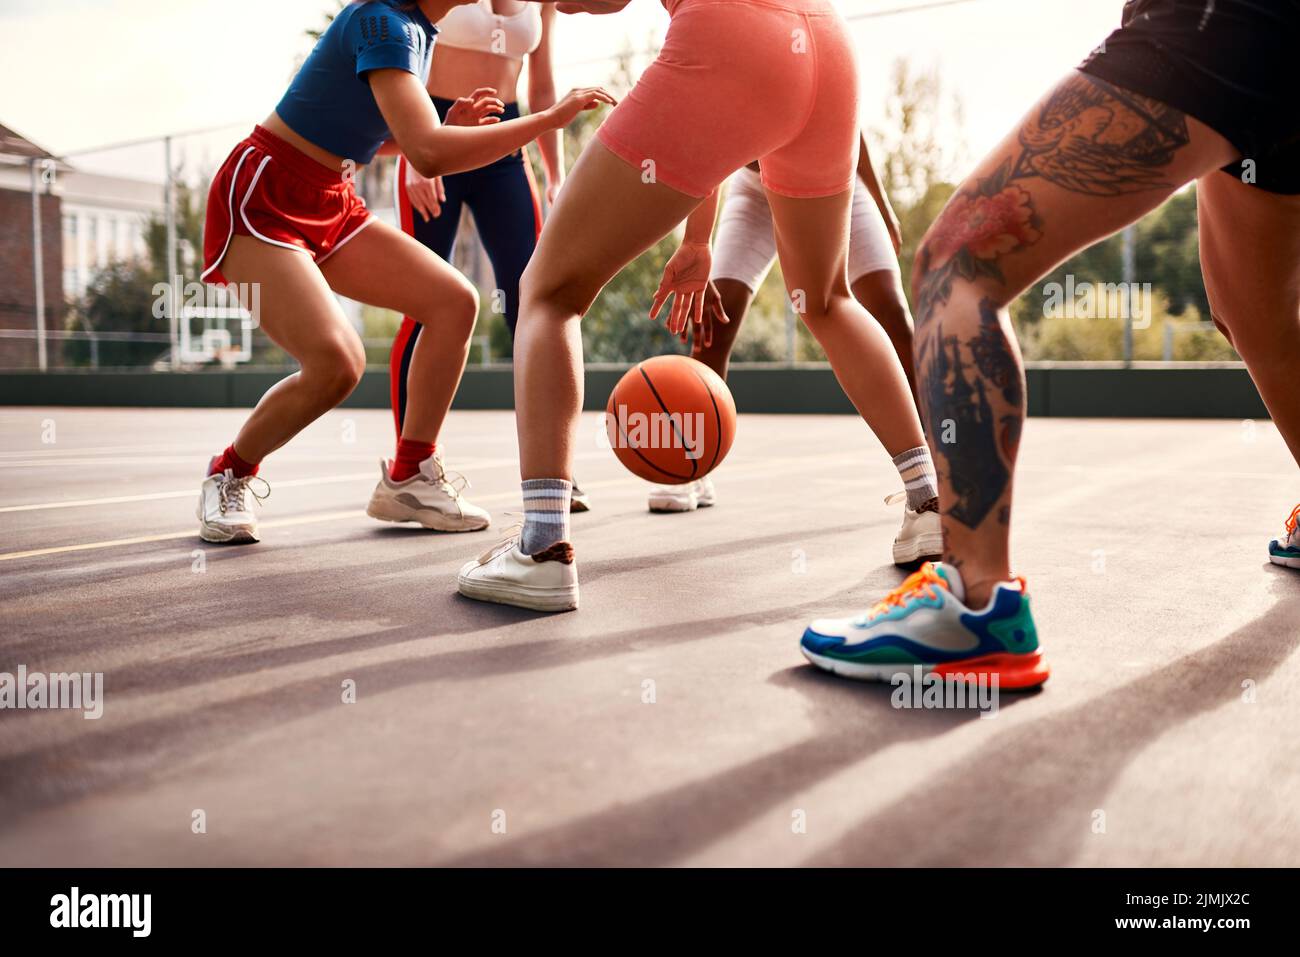 Wo die Hauptaktion ist. Eine vielfältige Gruppe von Sportlerinnen spielen ein Wettkampfspiel des Basketballs zusammen während des Tages. Stockfoto